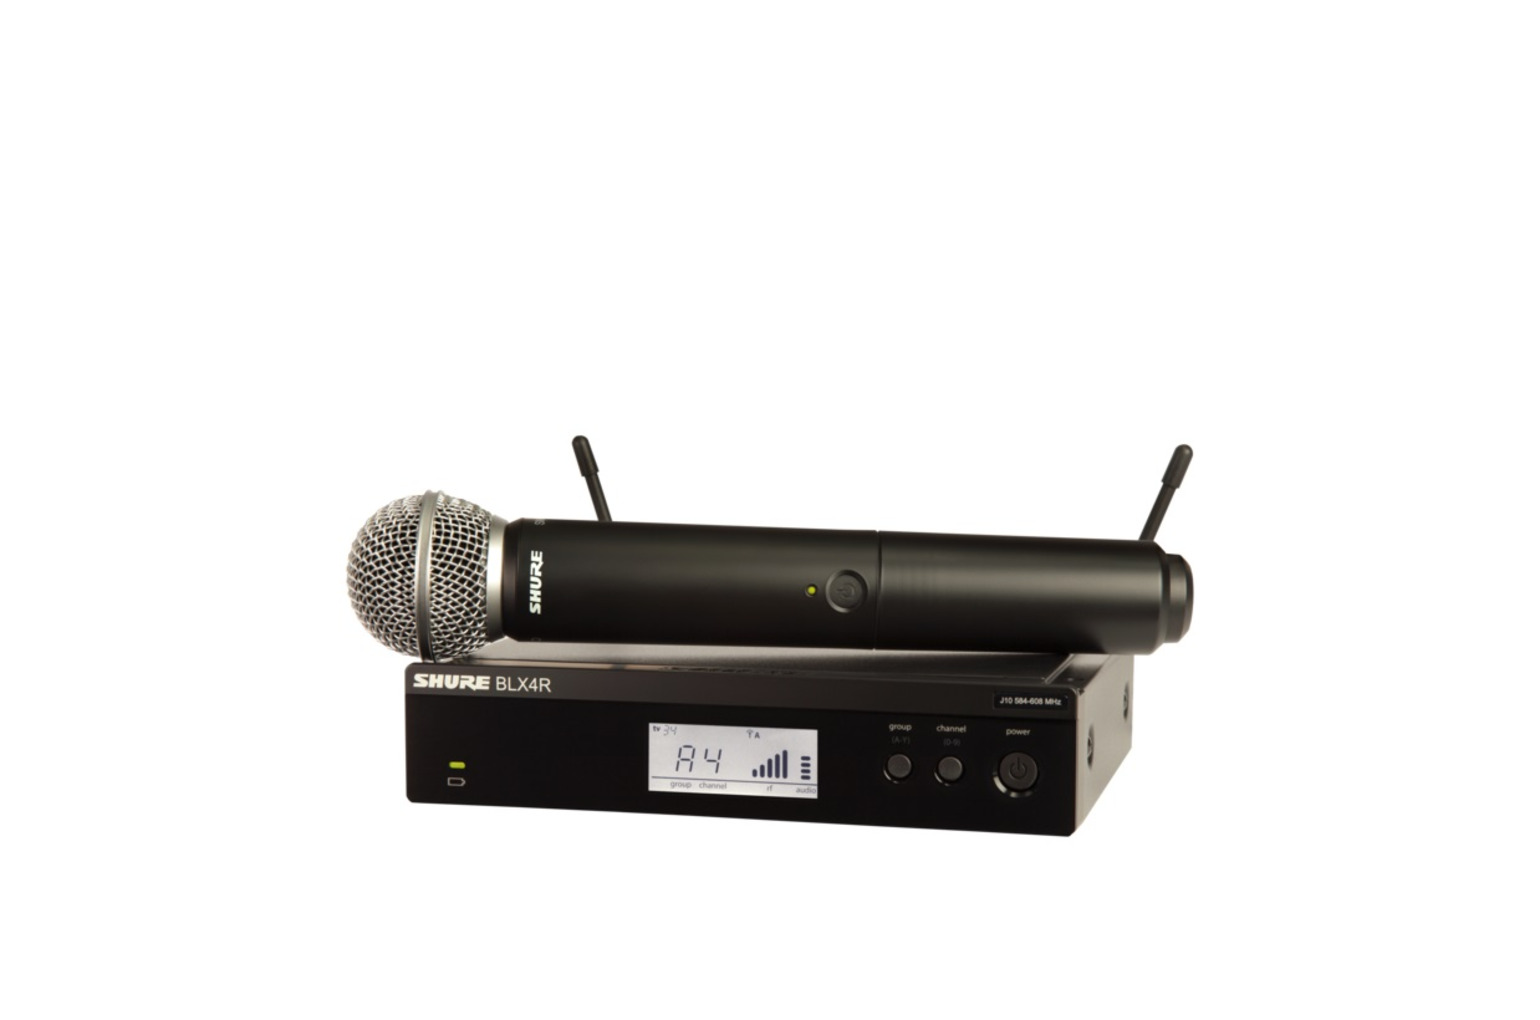 Вокальная радиосистема с ручным передатчиком. Shure blx24re/b58 радиосистема. Микрофон Shure blx24e/pg58. Shure BLX sm58. Shure blx24e/beta58 m17.